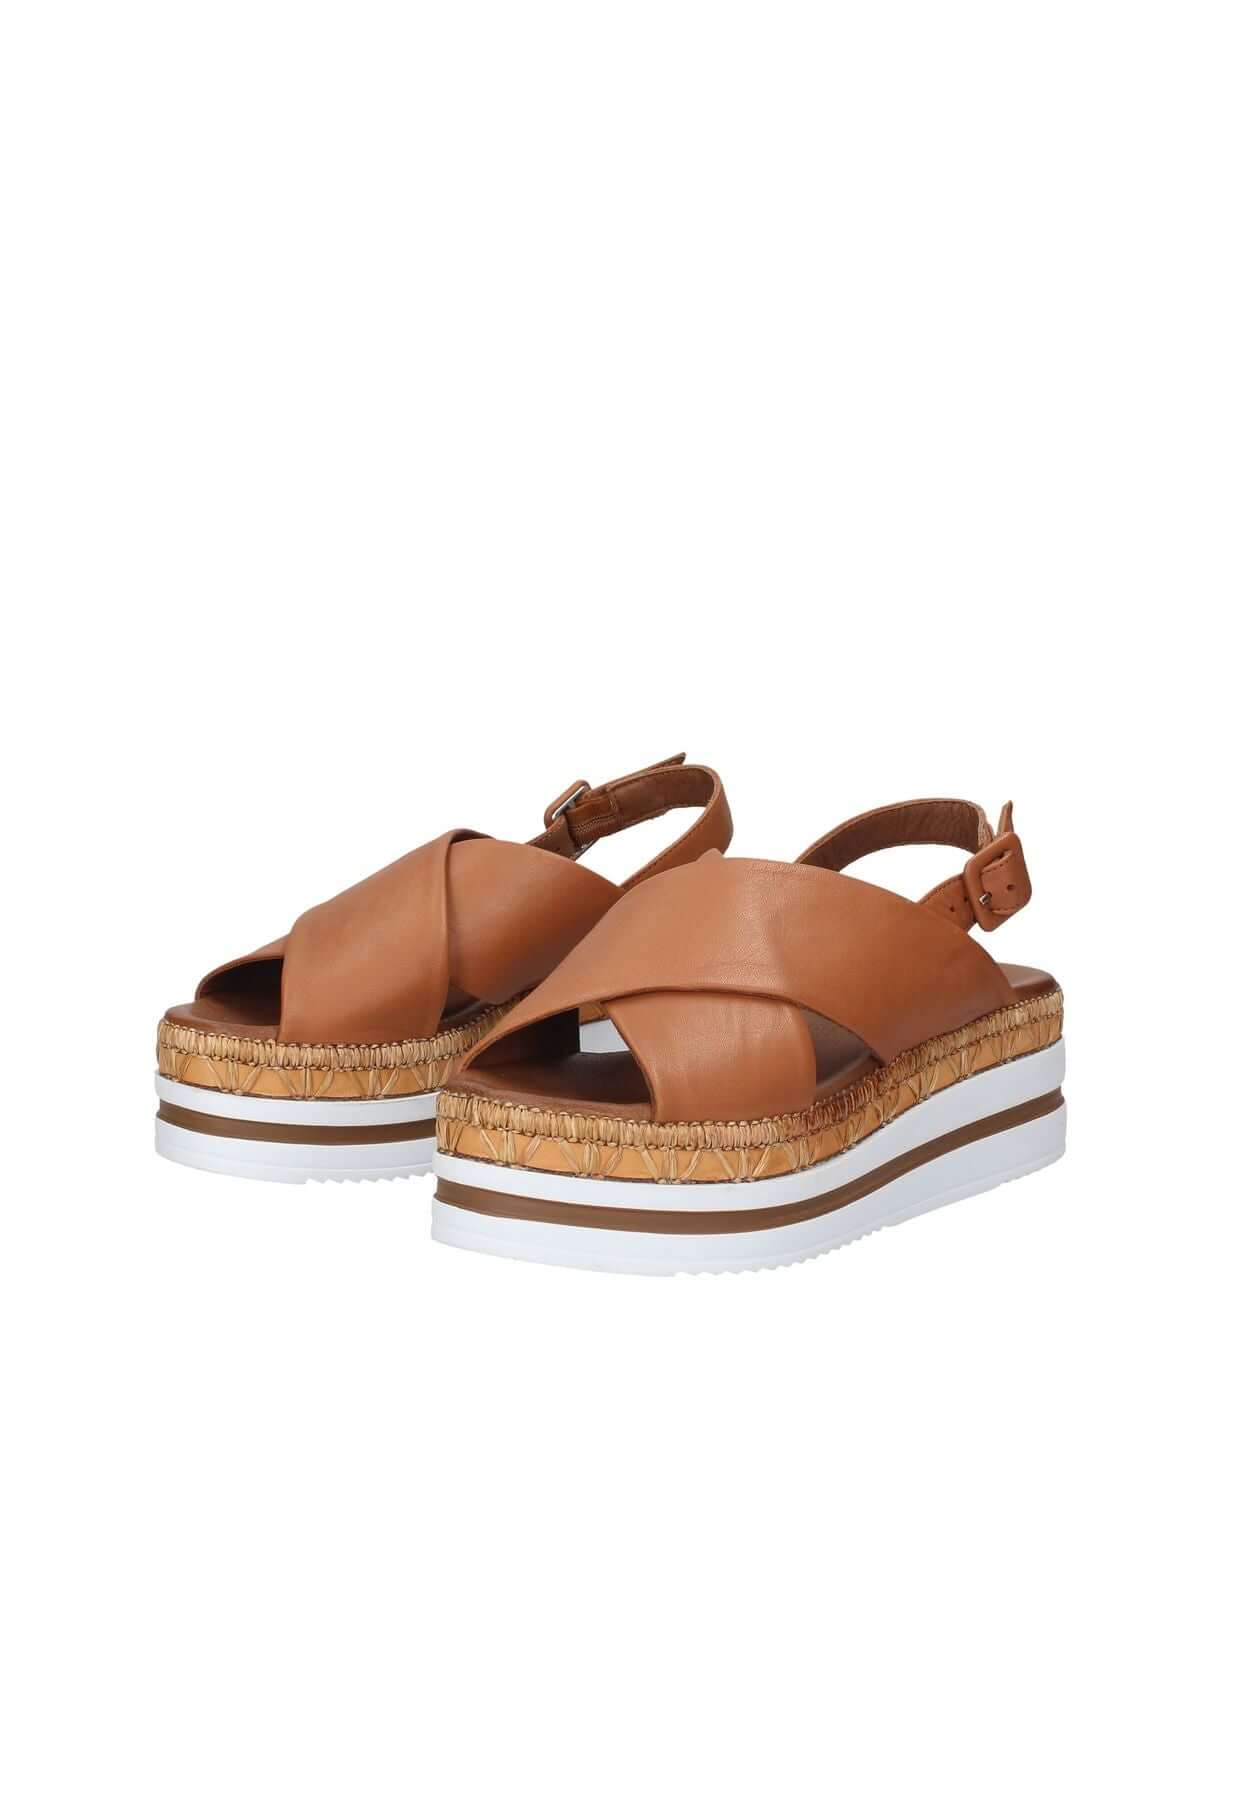 WU3701 BUENO sandal